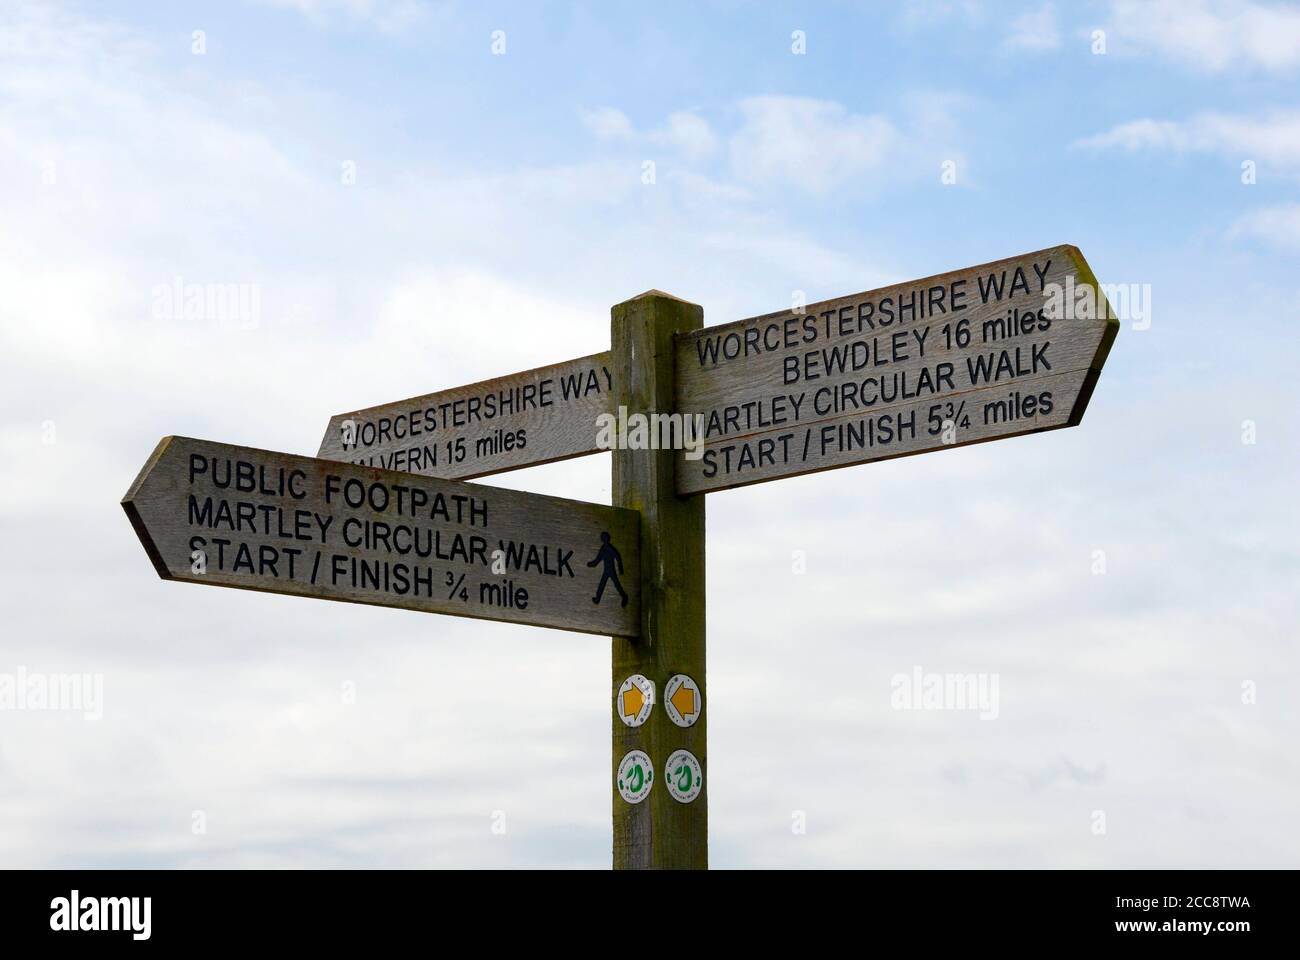 Panneau dans la campagne anglaise, avec des indications d'accès et des distances à divers endroits à proximité, Wocestershire, Angleterre Banque D'Images